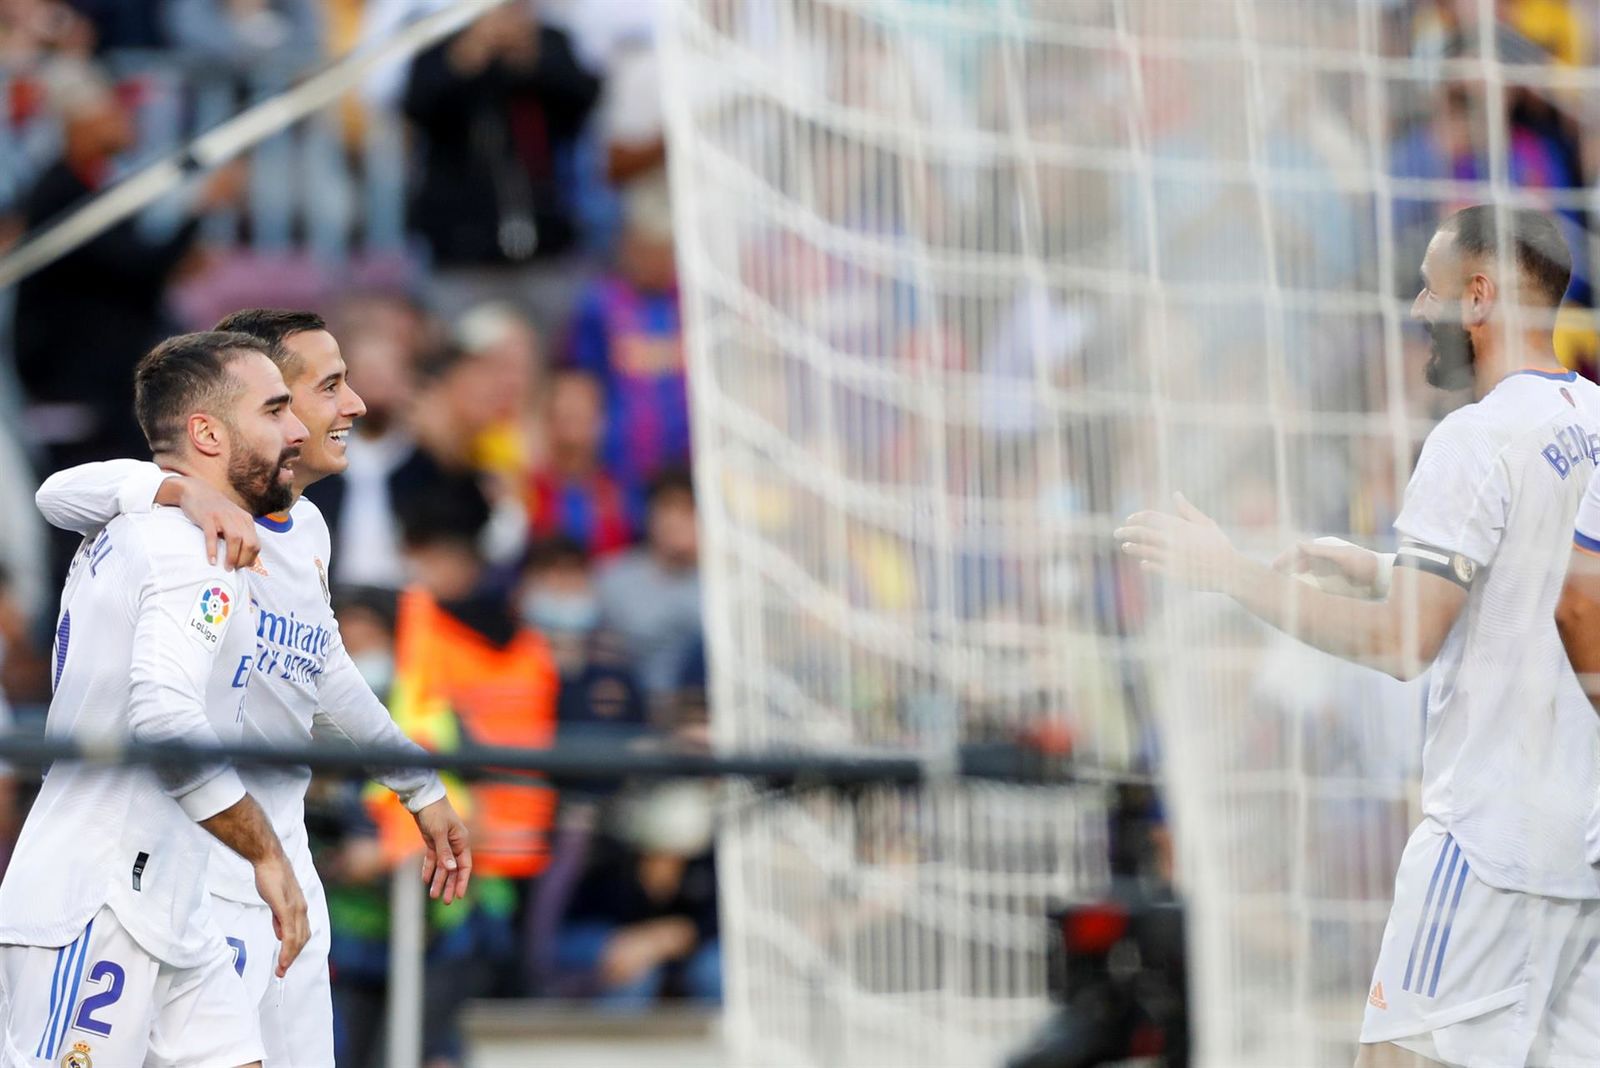 El Real Madrid se lleva el Clásico Español en el Camp Nou con goles de Alaba y Lucas Vázquez